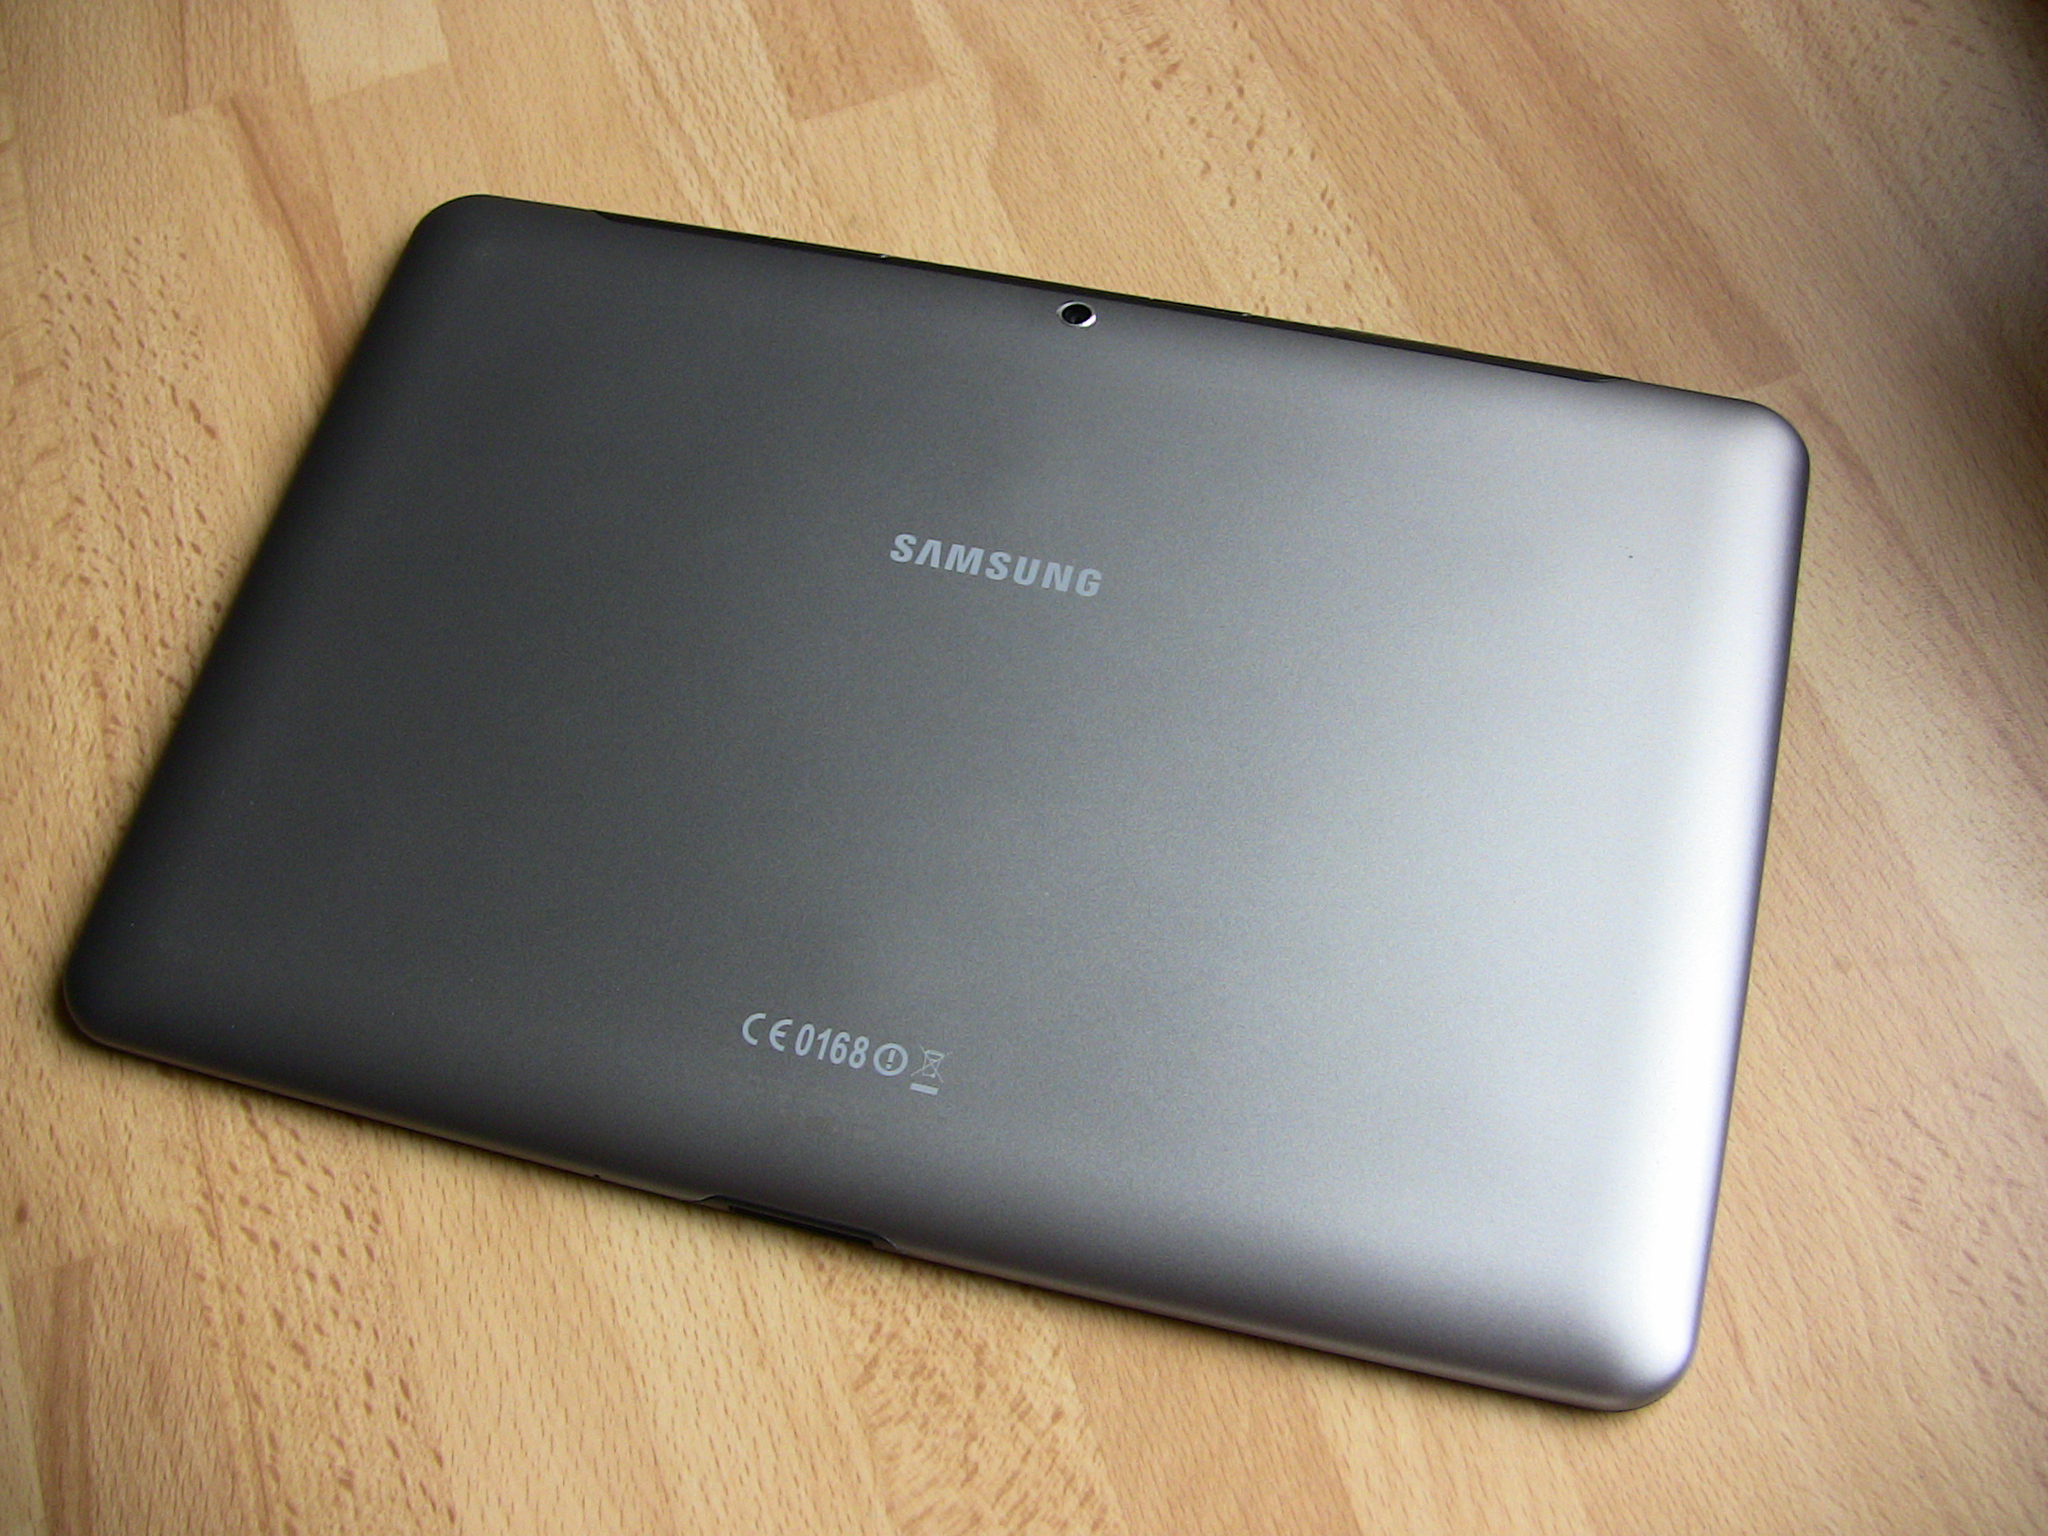 Samsung Galaxy Tab 2 10.1 – elegantní tablet s průměrnou výbavou